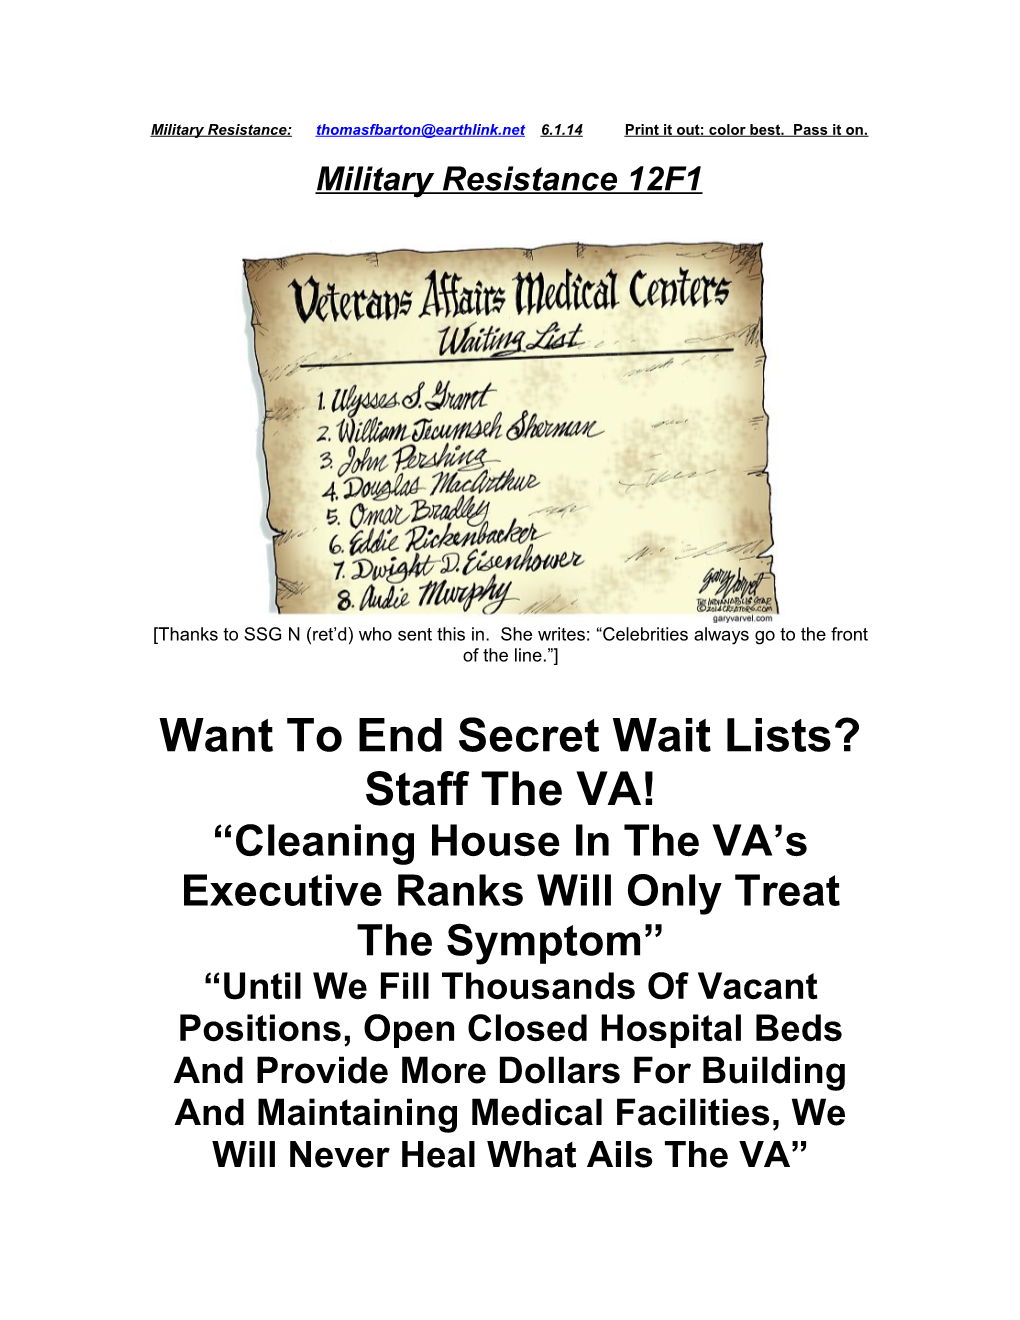 Want to End Secret Wait Lists? Staff the VA!